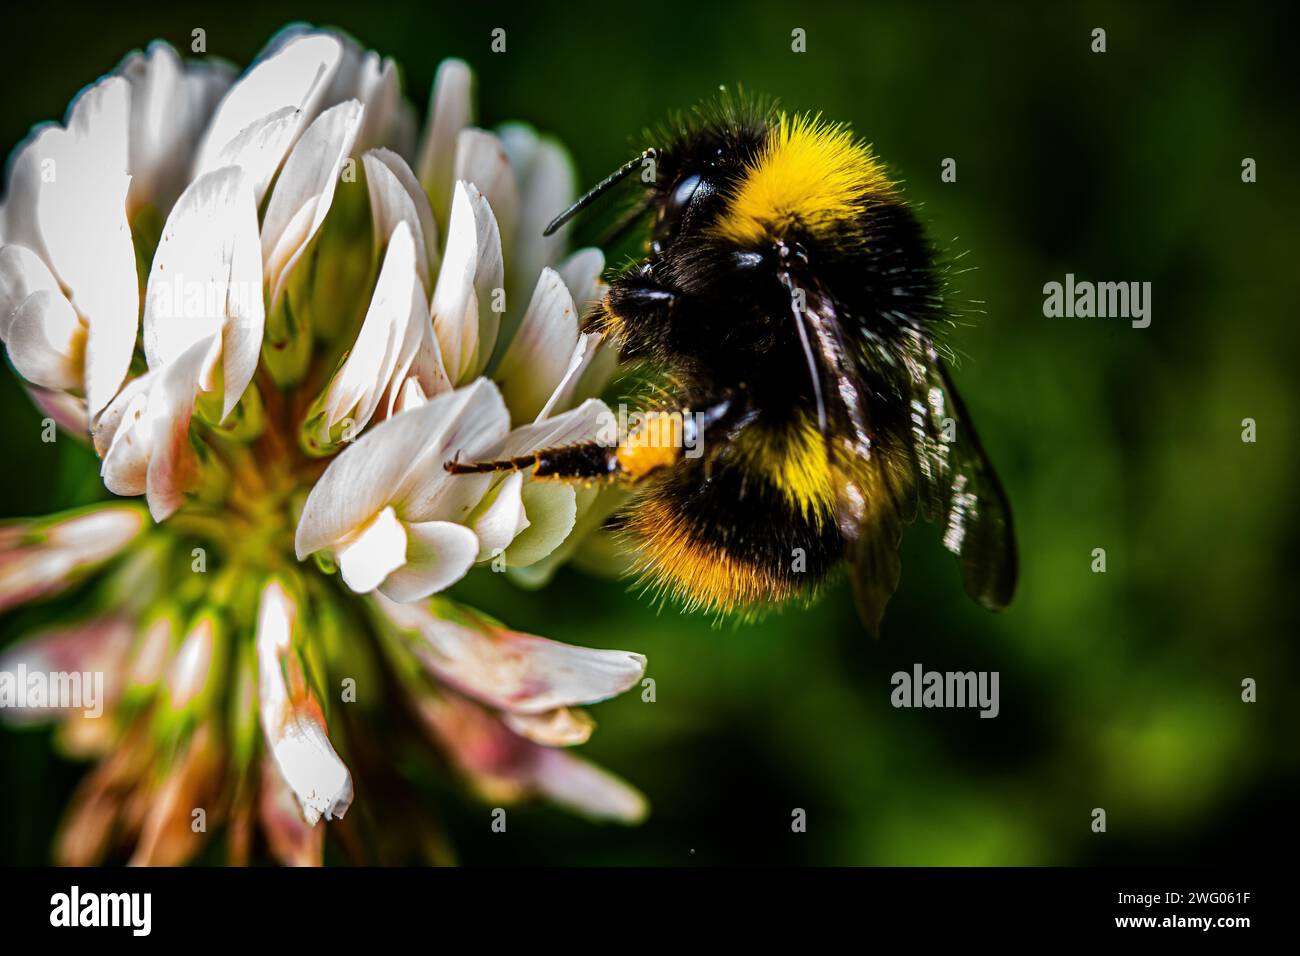 Bumble Bee sur une fleur blanche. L'image représente une abeille à rayures jaunes et noires perchée délicatement sur une fleur blanche immaculée. Les ailes de l'abeille le sont Banque D'Images